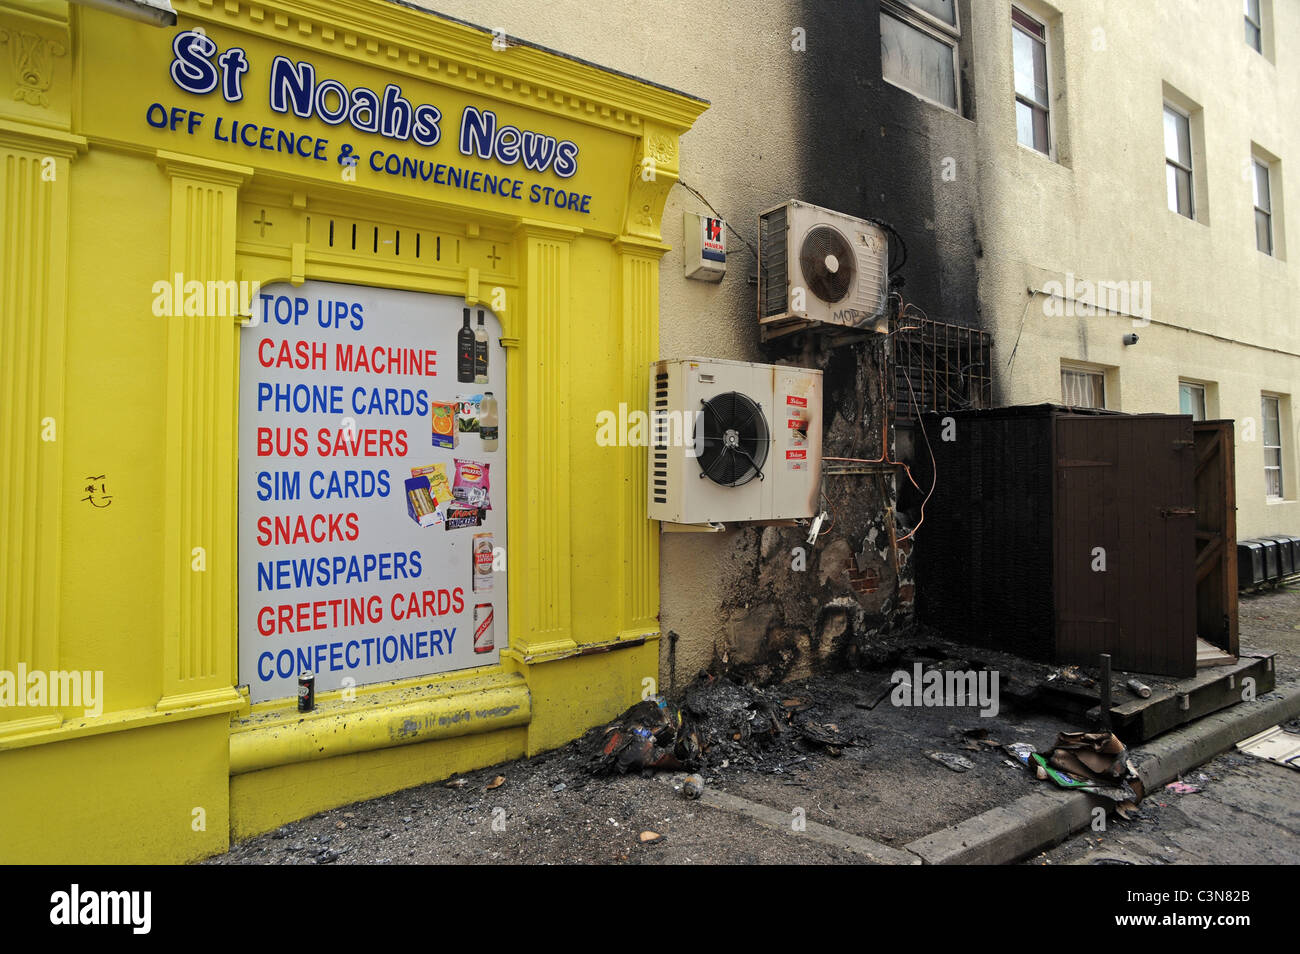 Feuerschaden Sie auf eine Mauer und eine Klimaanlage Einheiten, nachdem einige Kästen neben St Noahs News in Brighton angezündet wurden Stockfoto